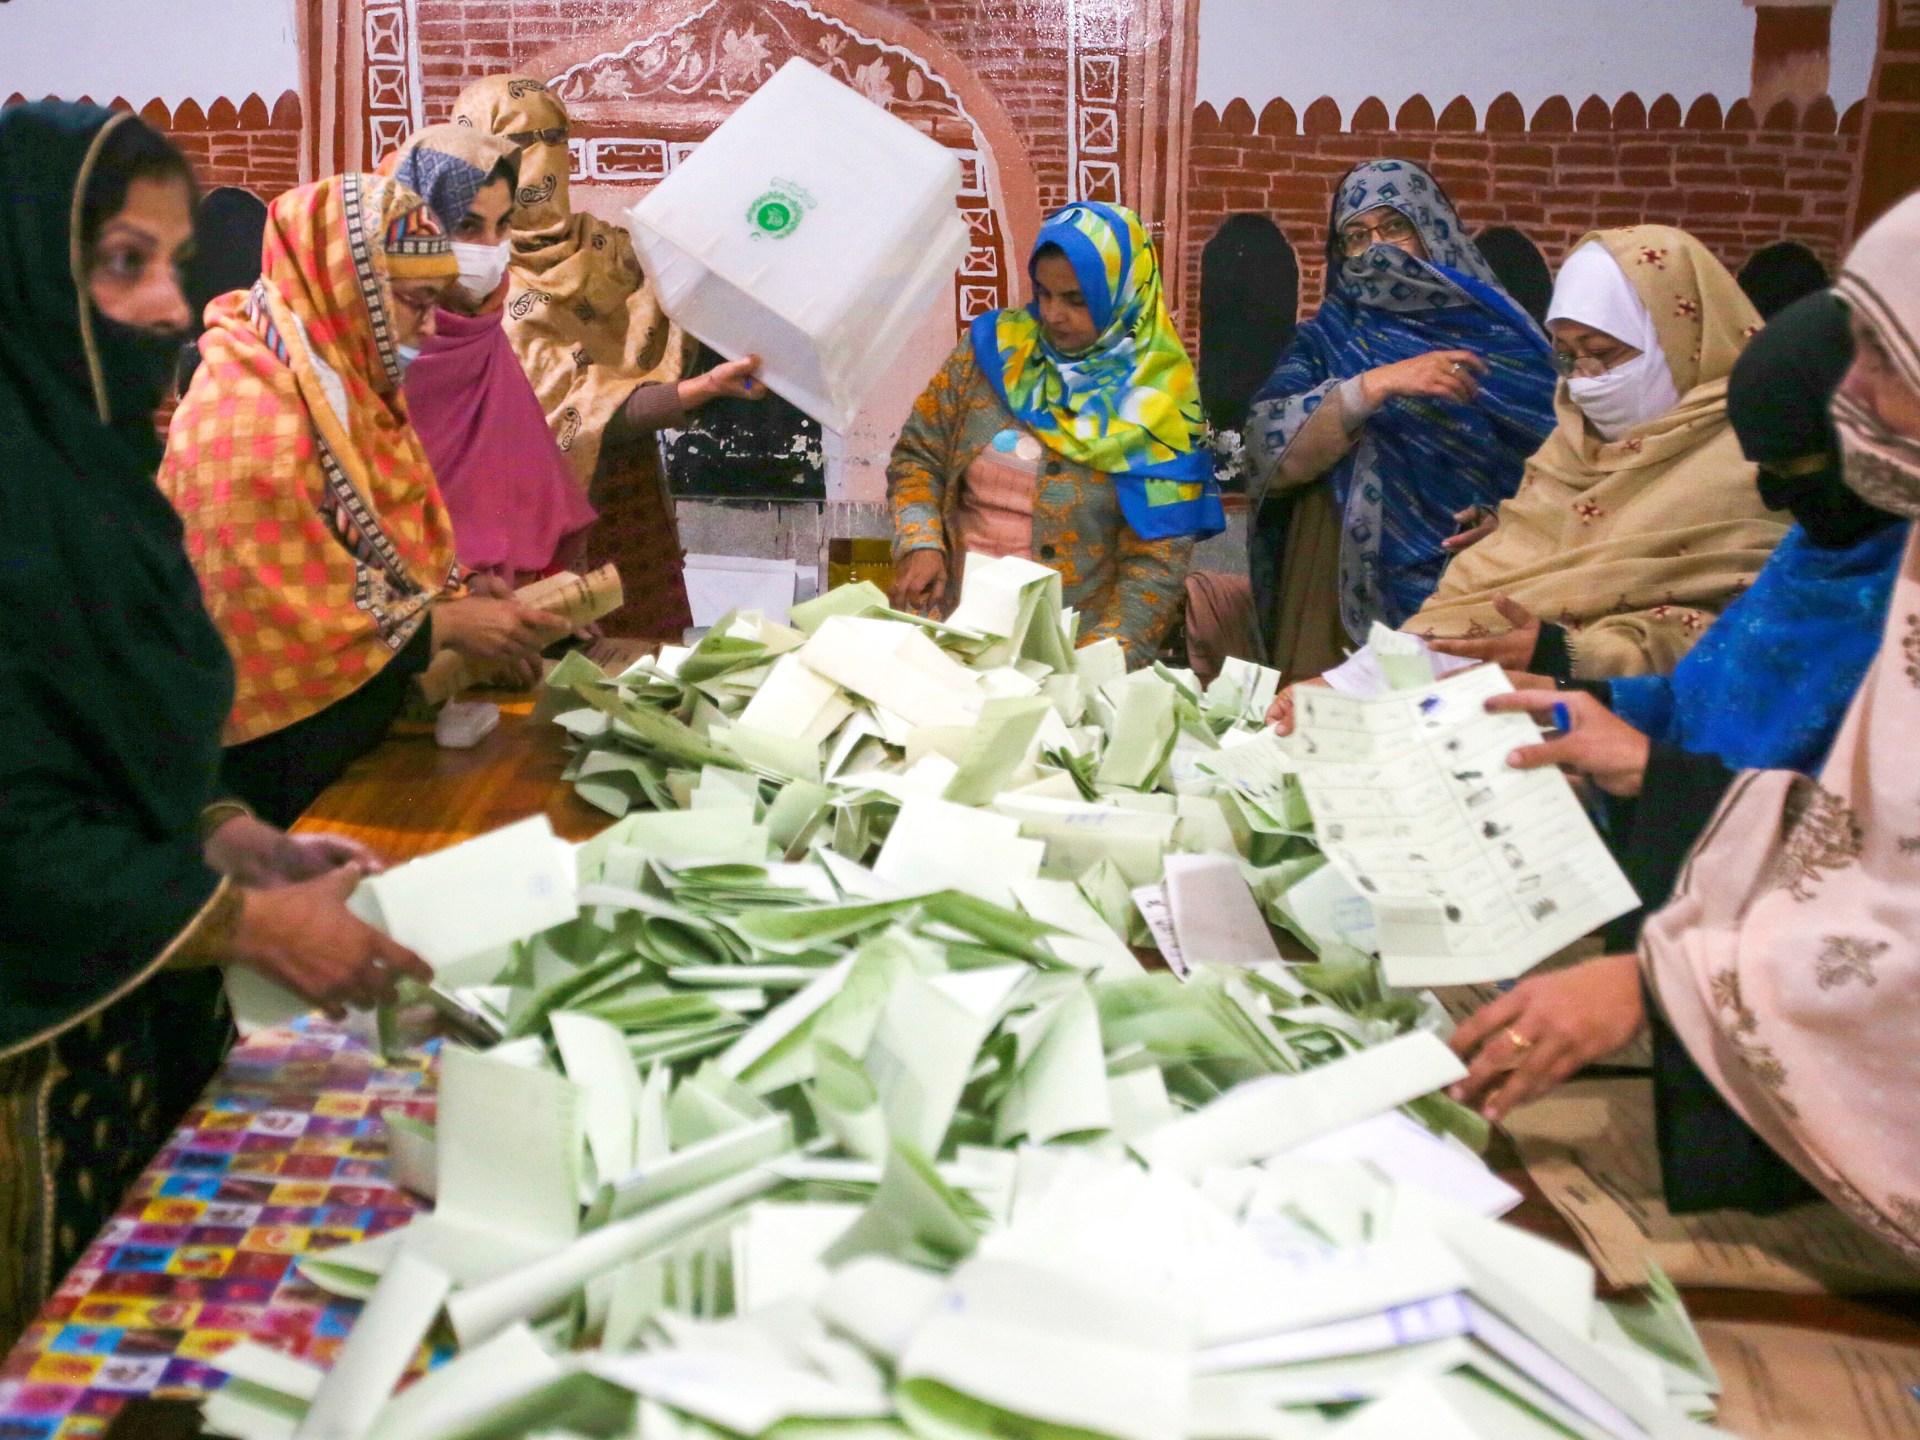 Khan und Sharif erklären Sieg bei pakistanischen Wahlen, obwohl sie keine klare Mehrheit haben |  Wahlnachrichten